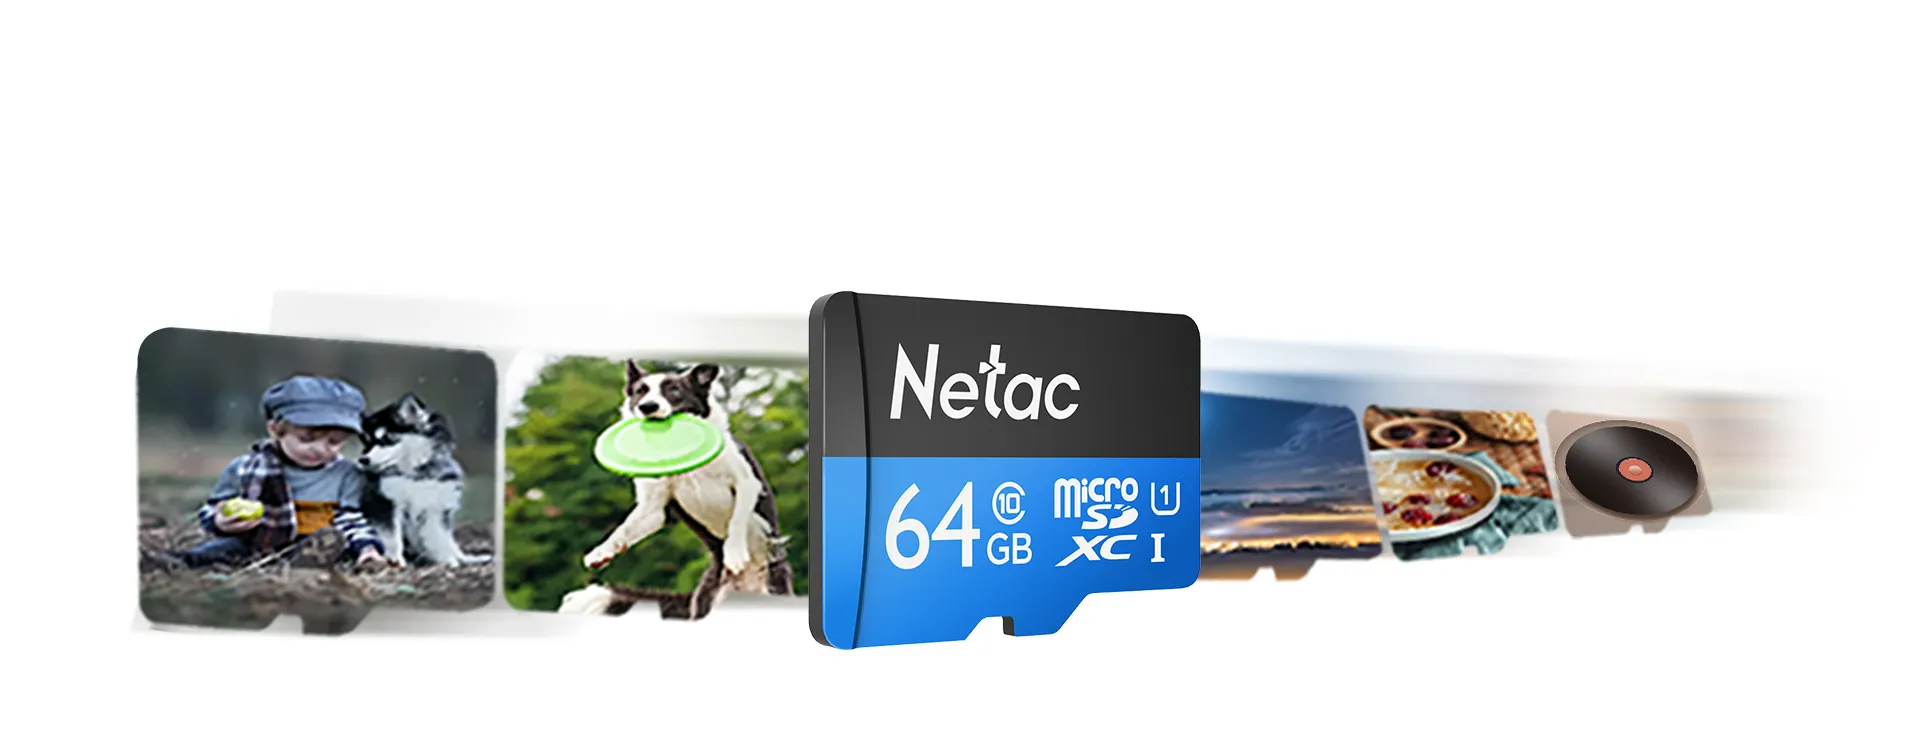 朗科 Netac P500 Micro SD Card